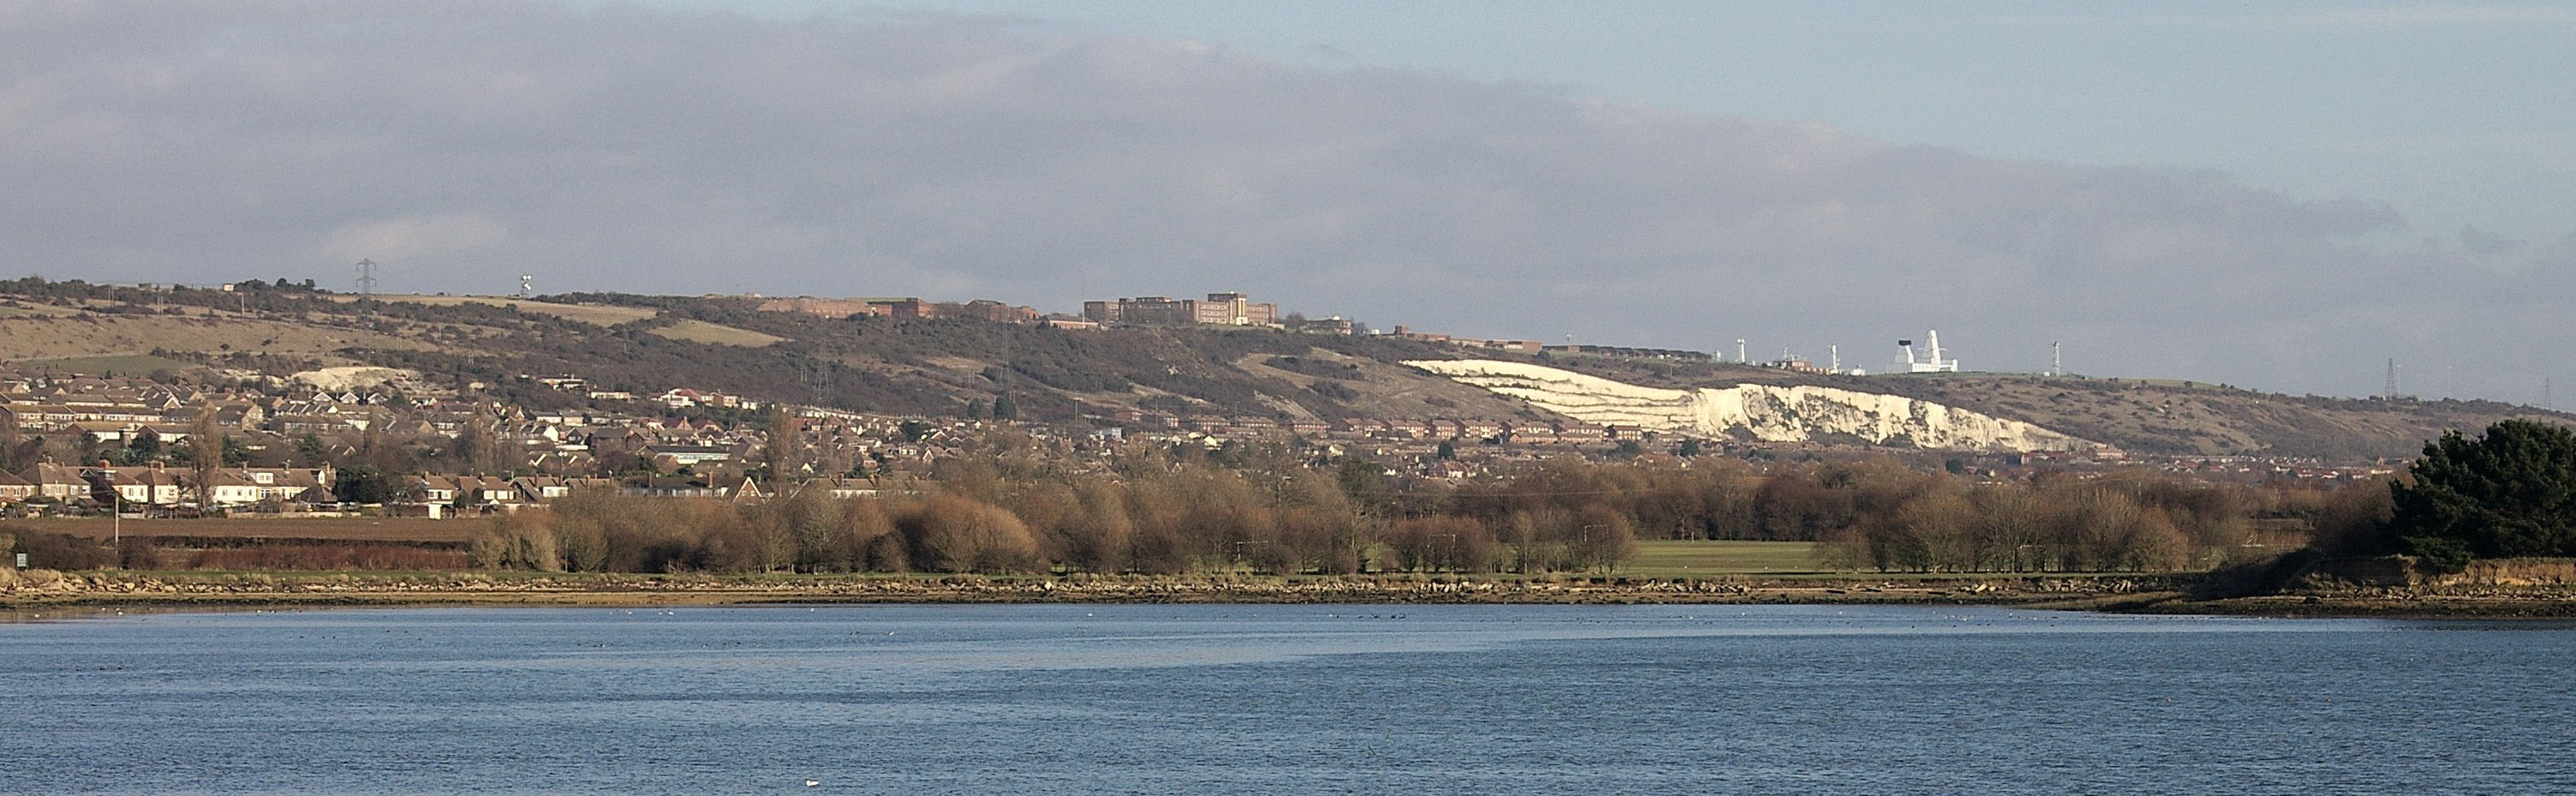 Panoramic view of Portsdown